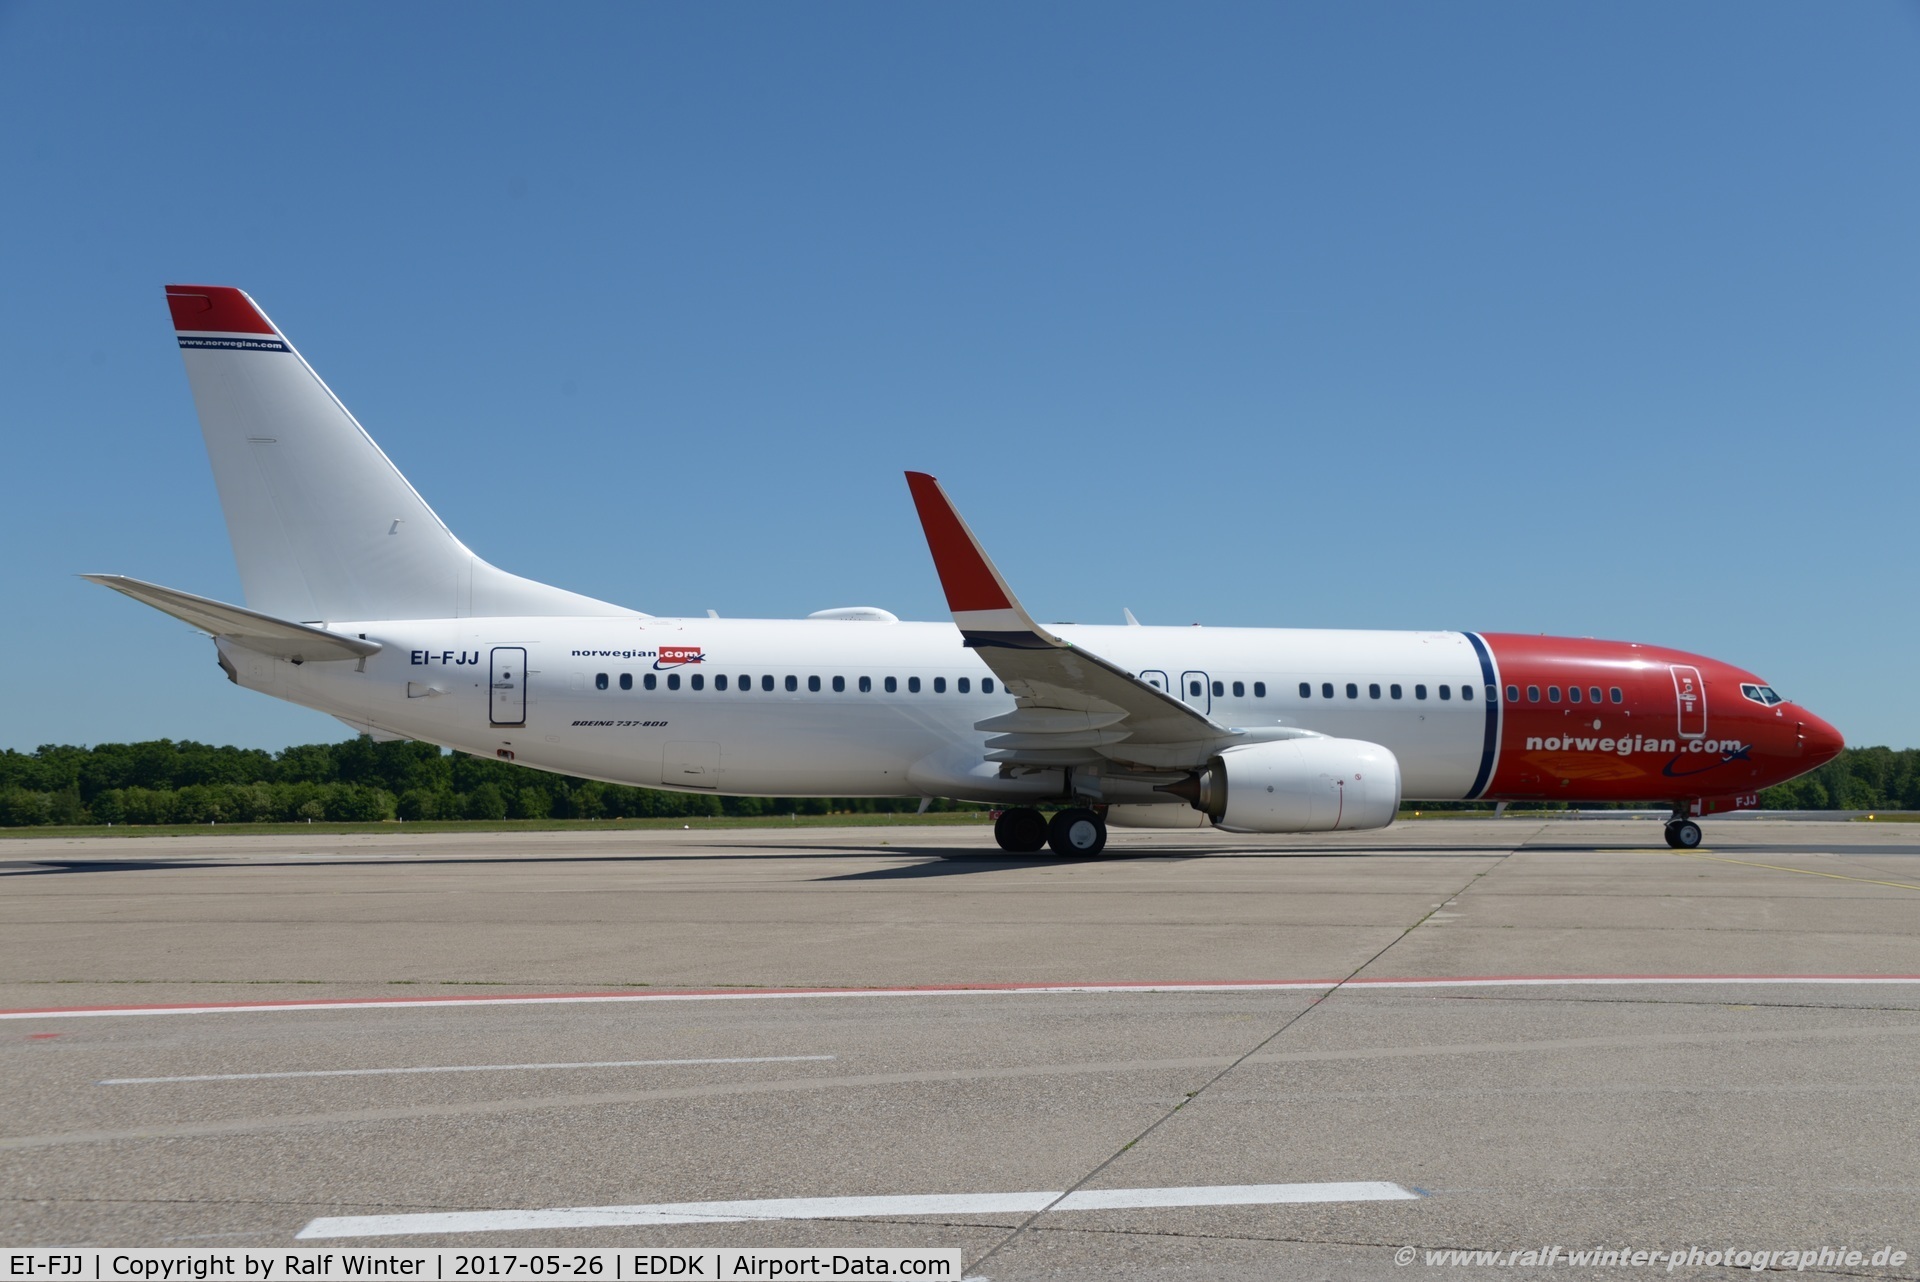 EI-FJJ, 2016 Boeing 737-8JP C/N 41148, Boeing 737-8JP(W) - IBK Norwegian Air International - 41148 - EI-FJJ - 26.05.2017 - CGN